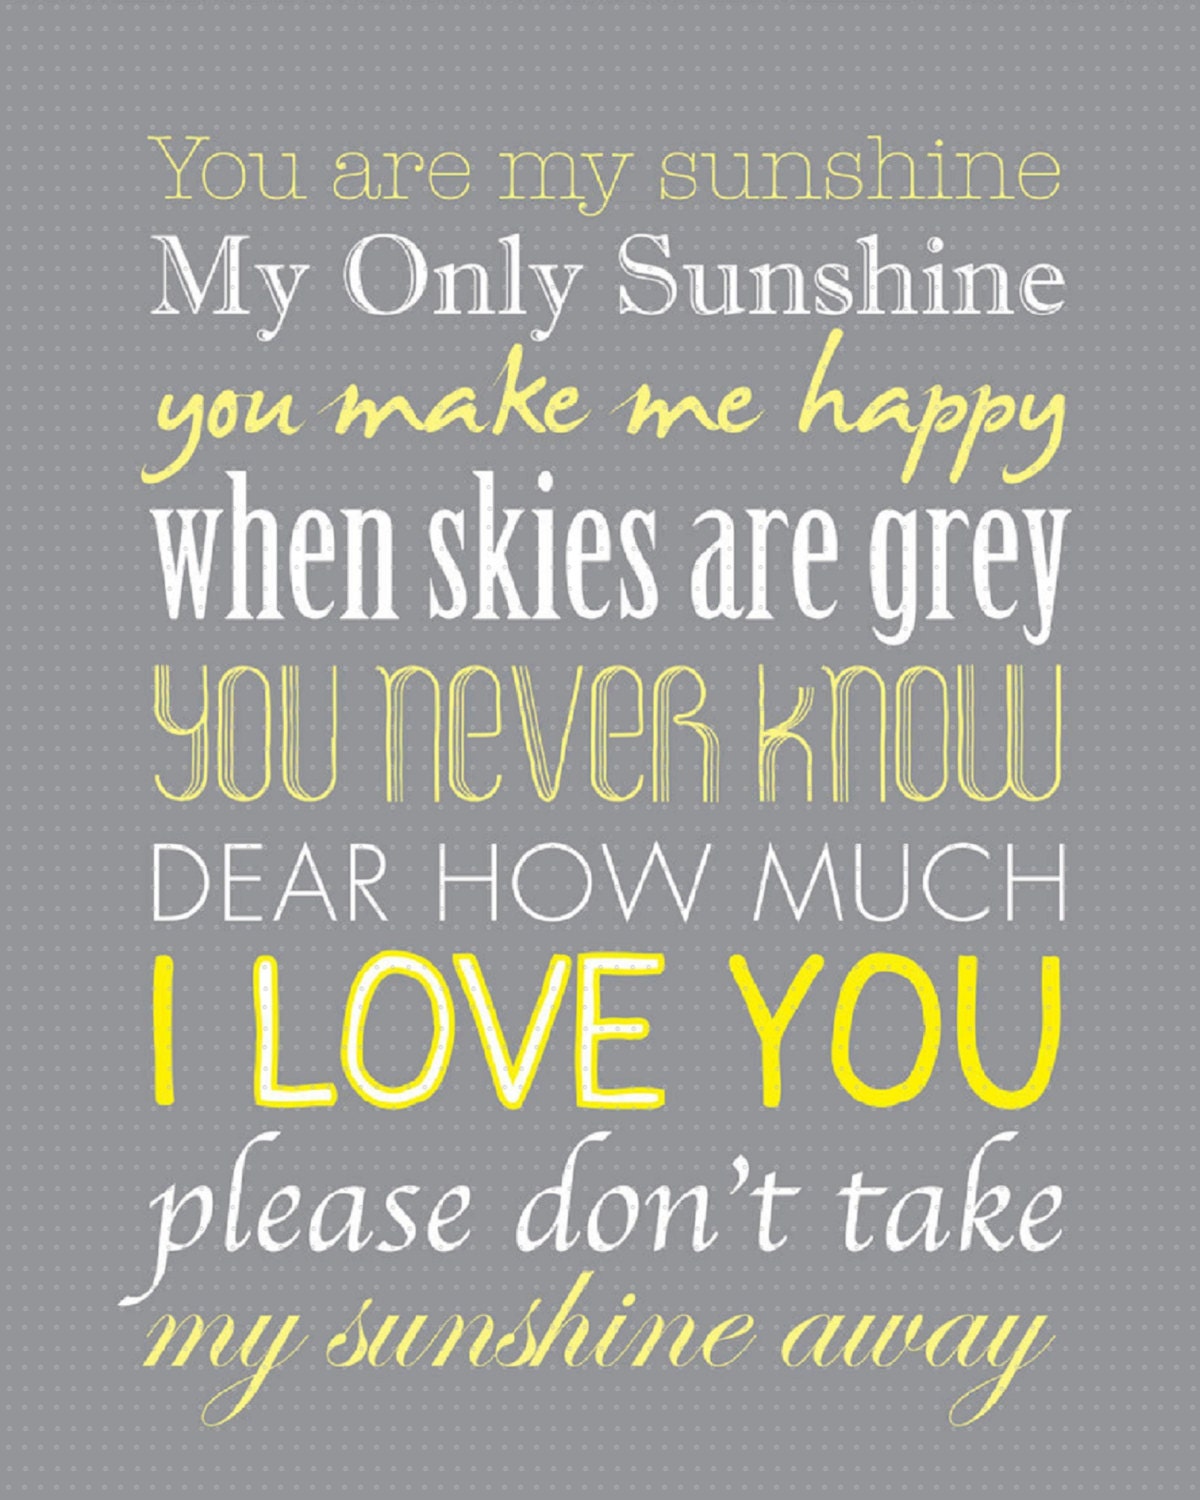 lyrics to you are my sunshine